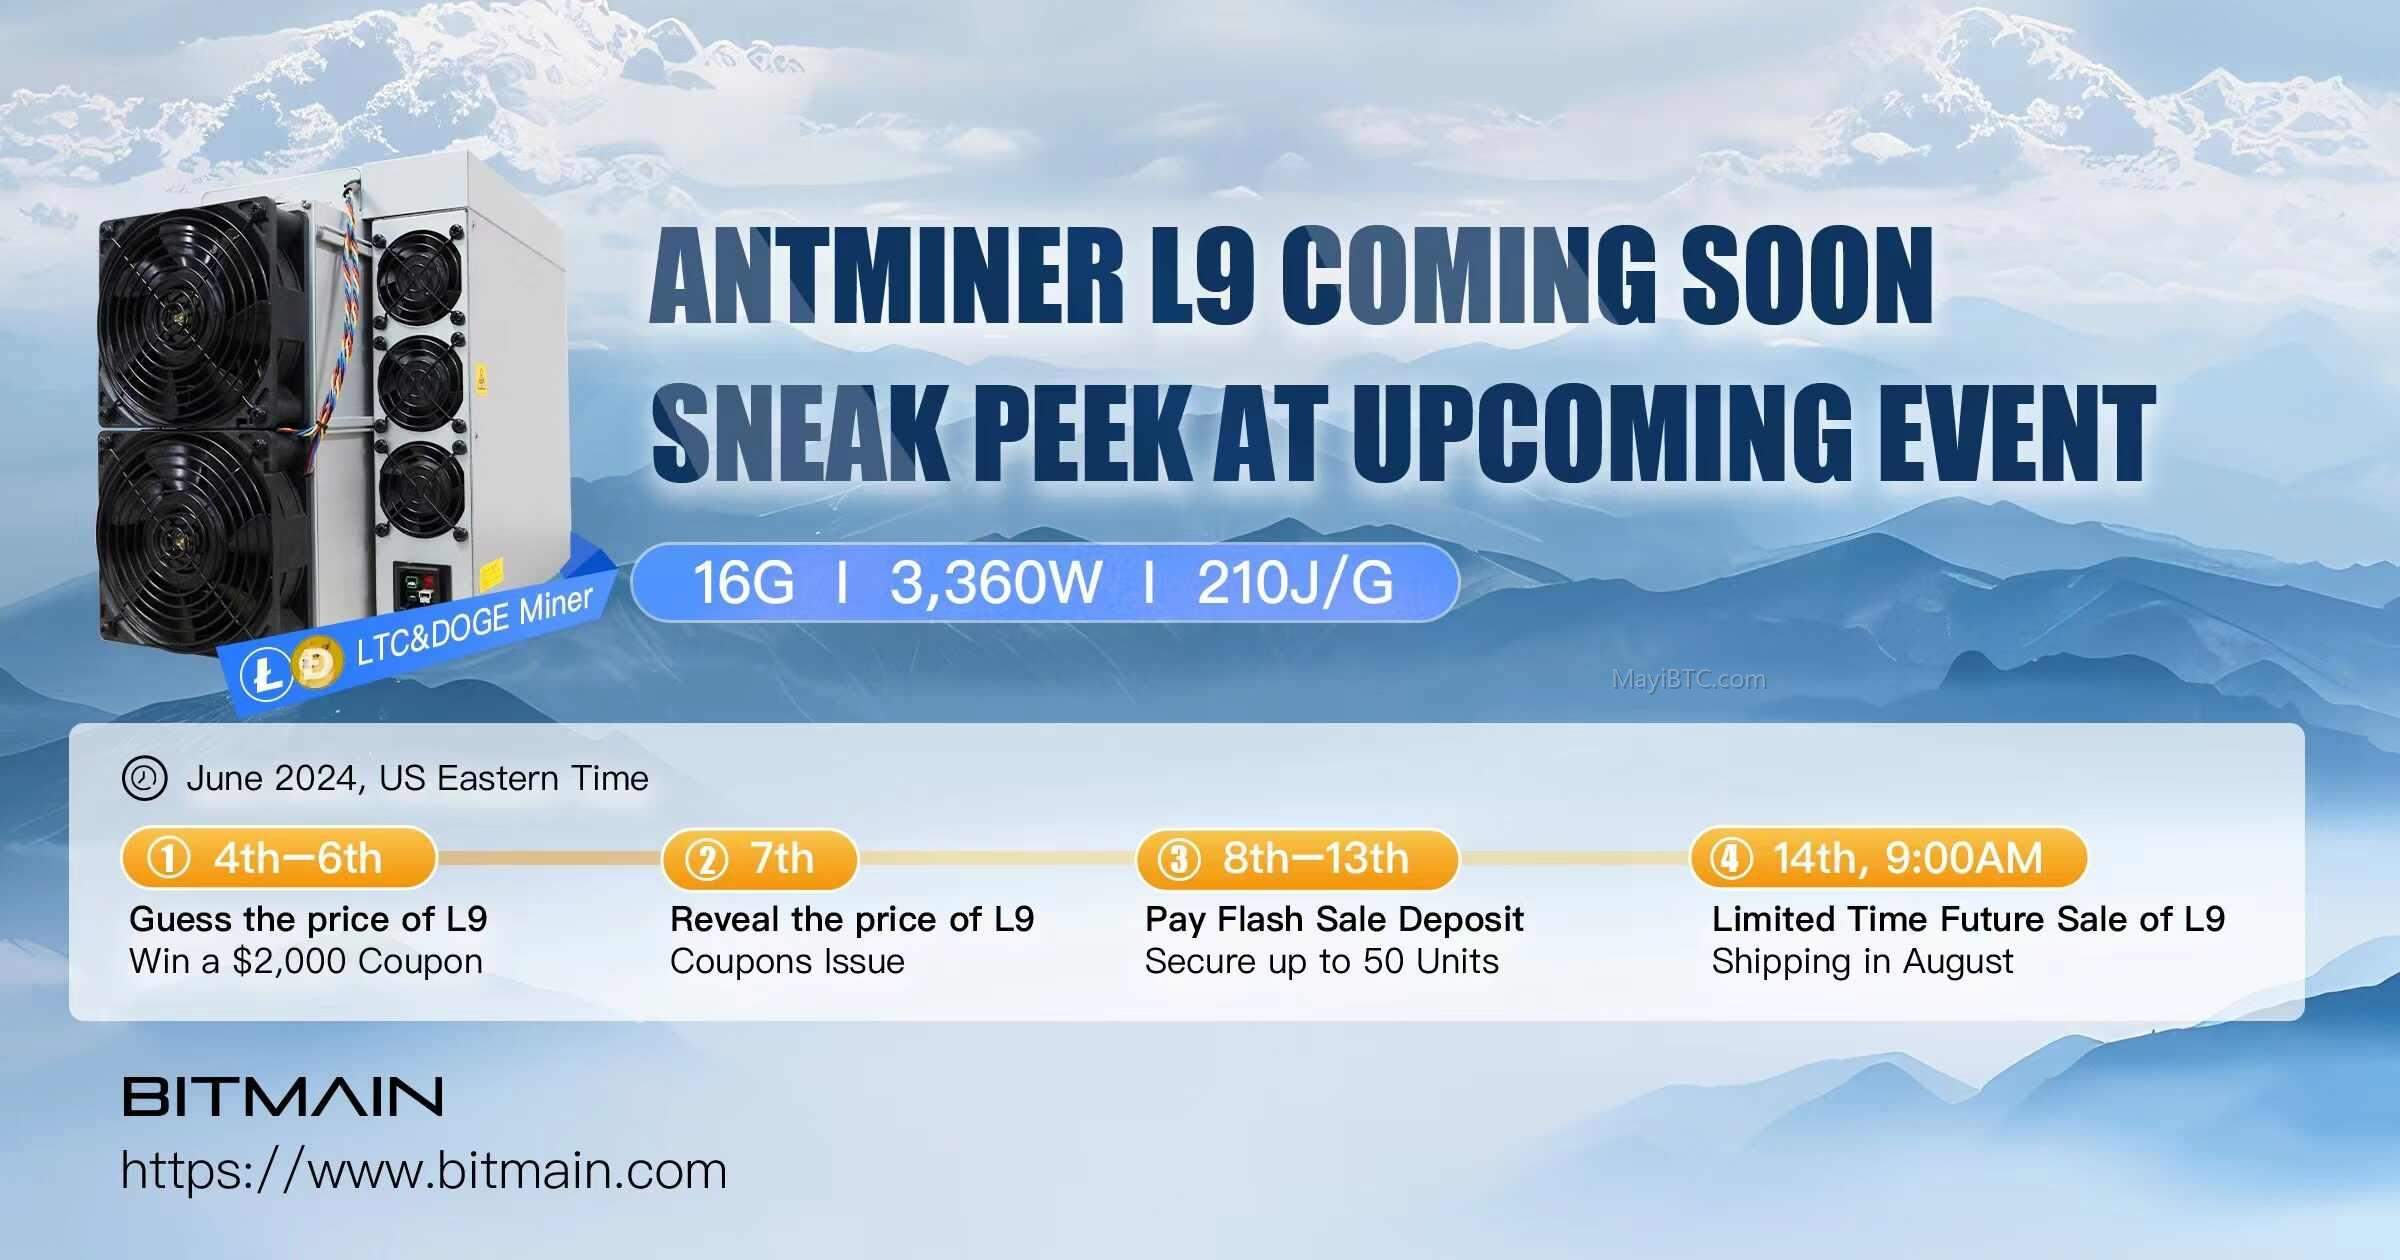 比特大陆官网商城6月发售ANTMINER L9，参与价格竞猜赢取$2000优惠券